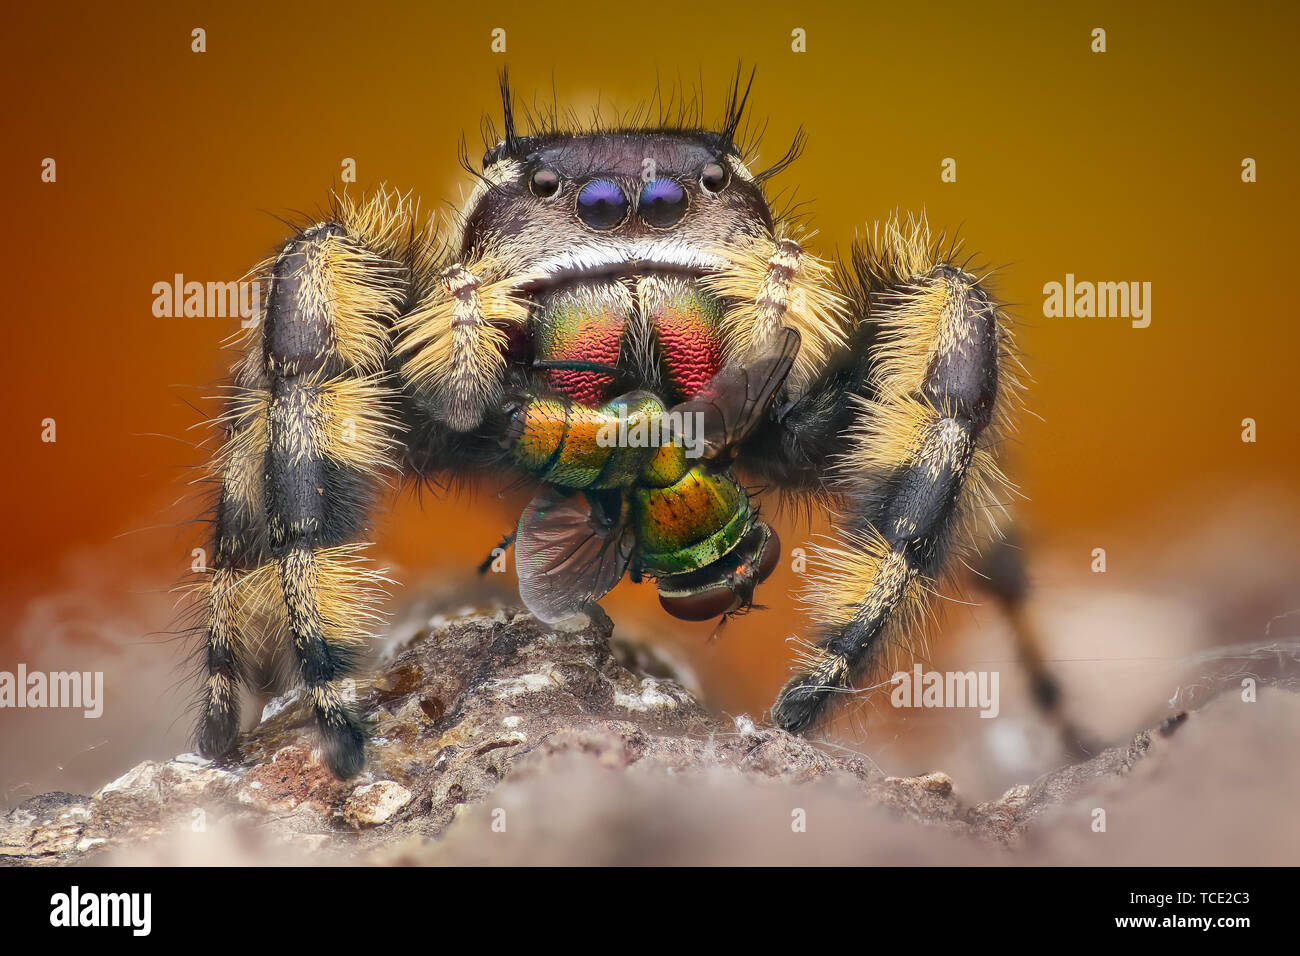 Portrait d'une araignée sauteuse (phiddipus otiosus), Indonésie Banque D'Images